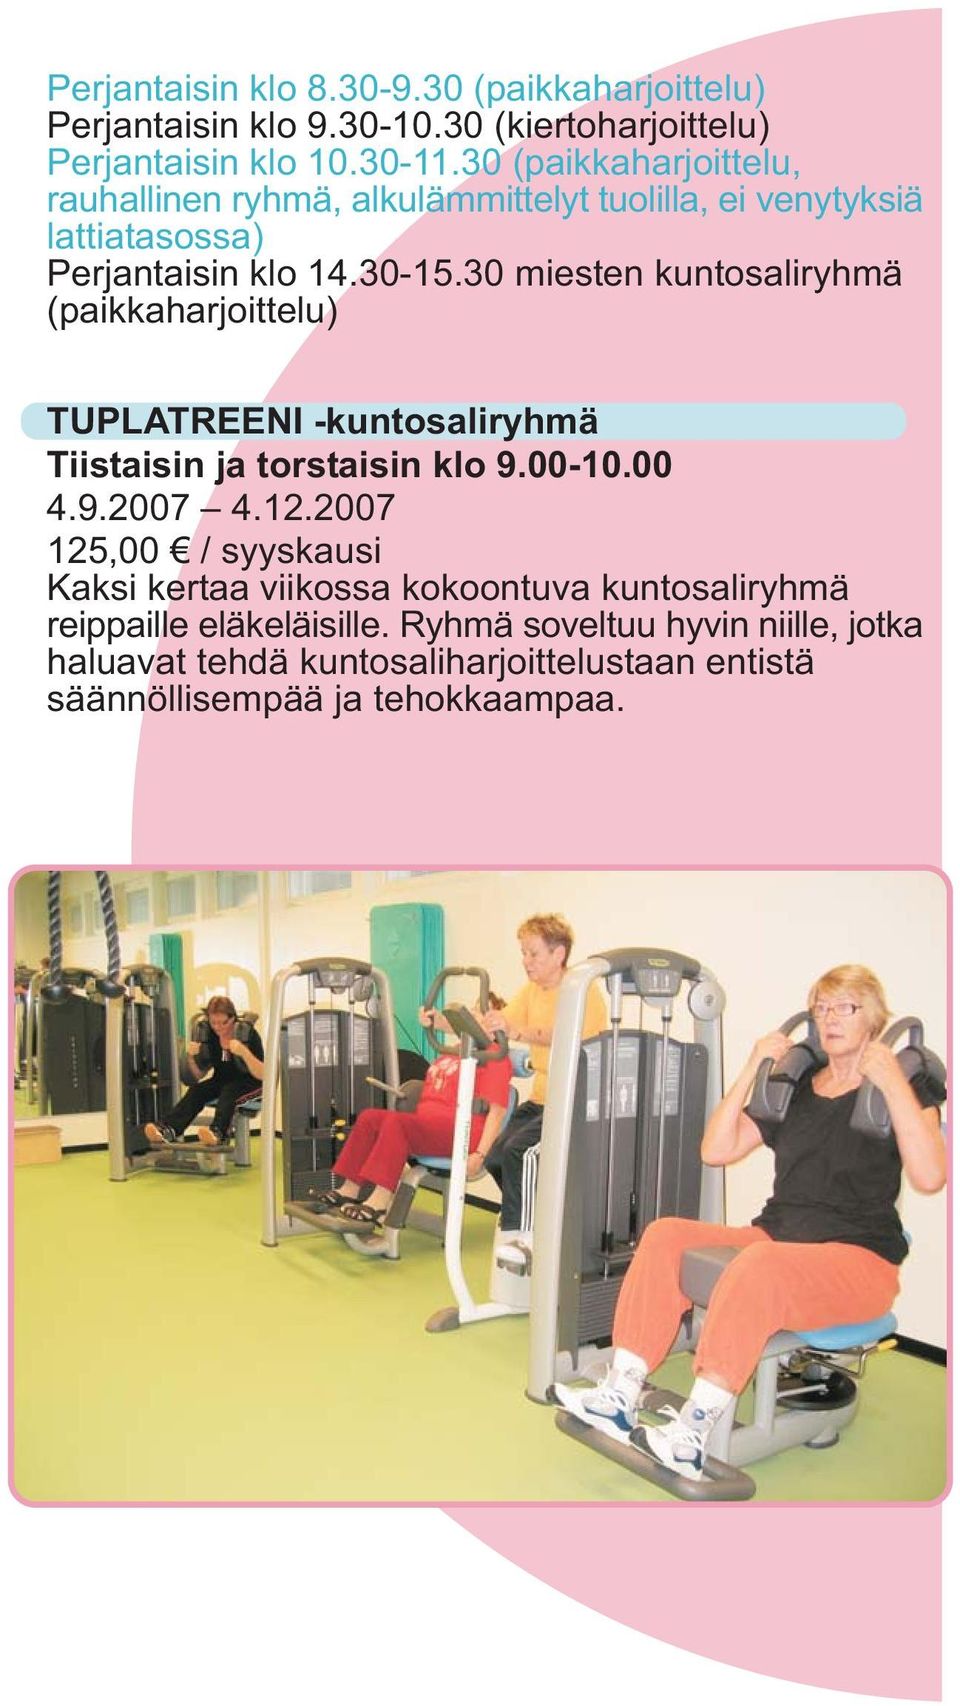 30 miesten kuntosaliryhmä (paikkaharjoittelu) TUPLATREENI -kuntosaliryhmä Tiistaisin ja torstaisin klo 9.00-10.00 4.9.2007 4.12.